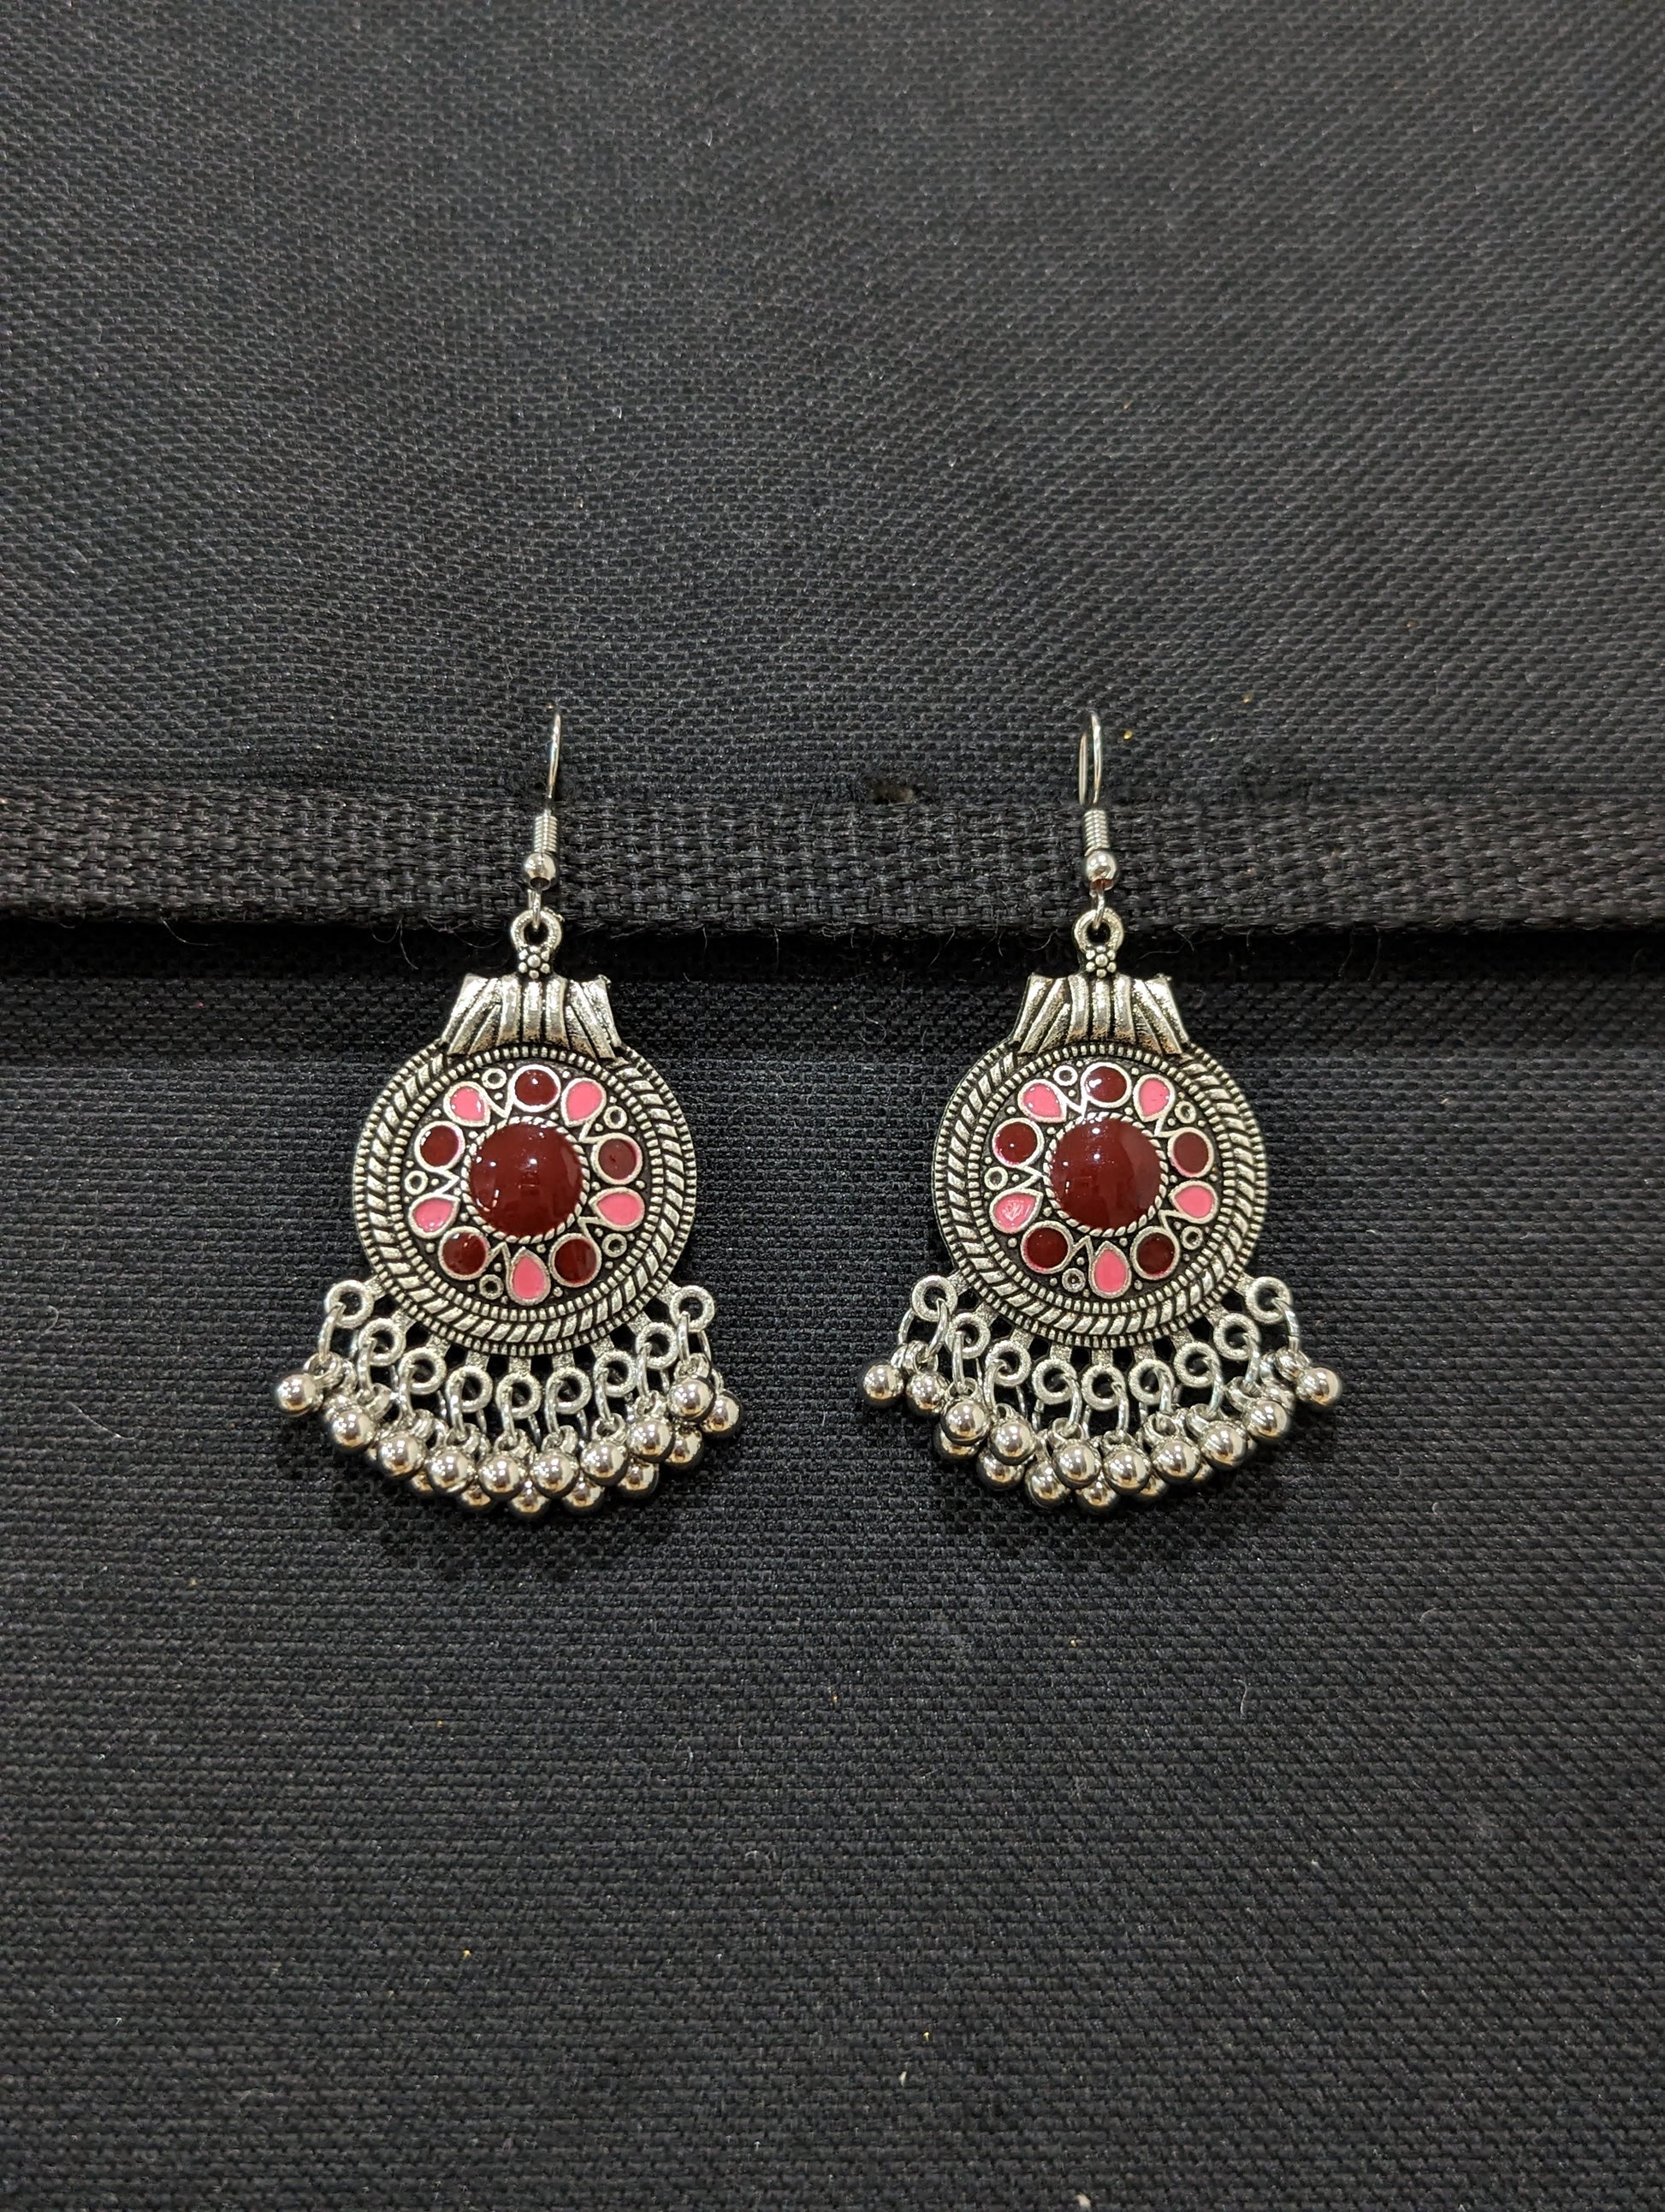 Antique silver enamel Round hook drop Earrings – Simpliful Jewelry